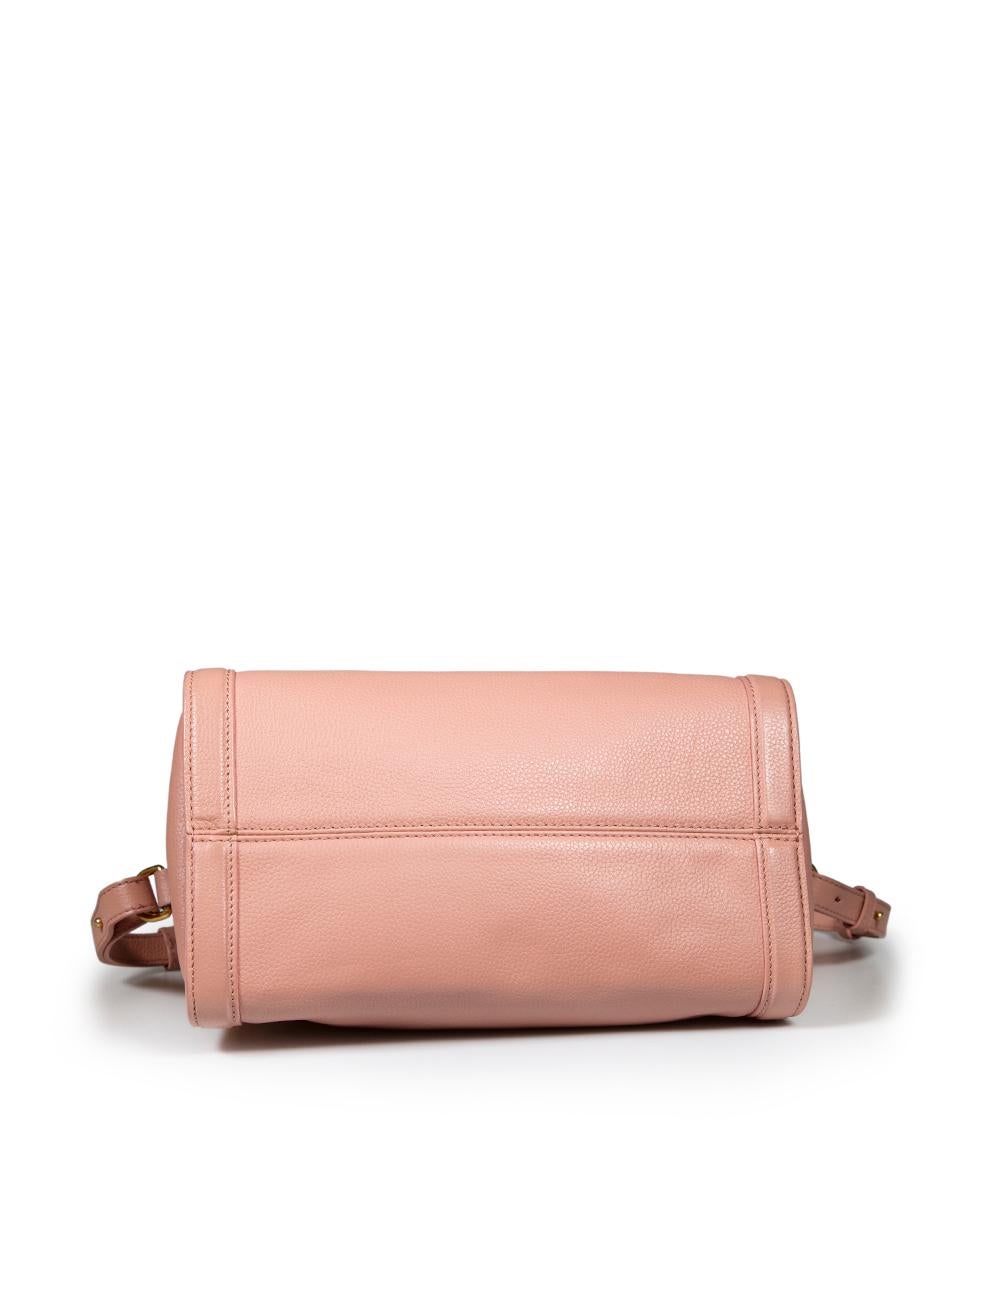 Women's Alexander McQueen Pink Leather Skull Padlock Handbag For Sale